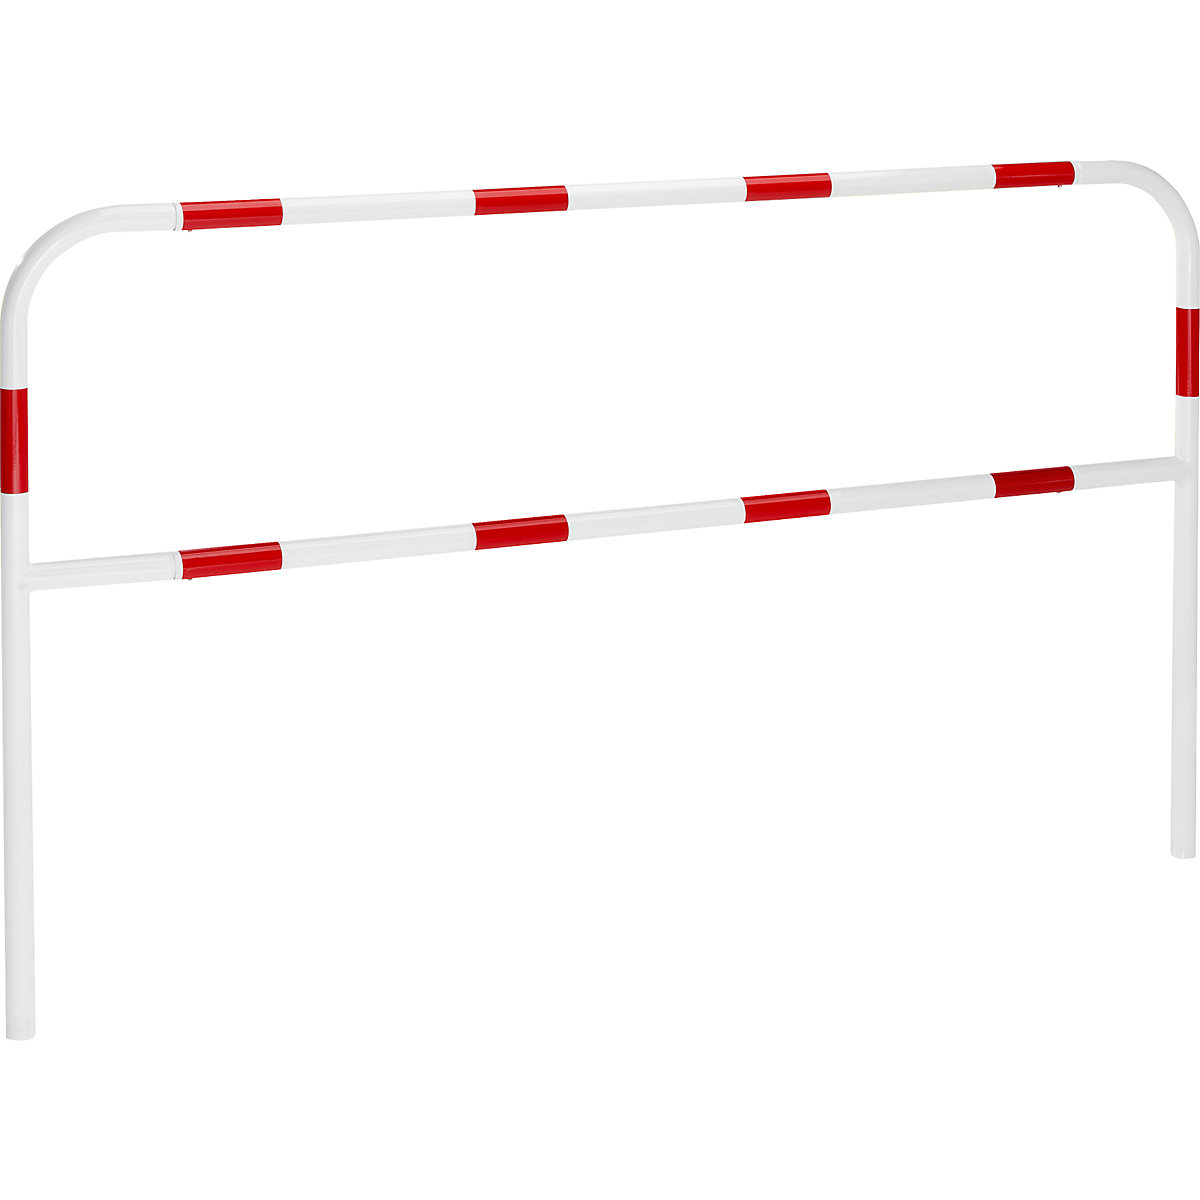 Sicherheitsbügel für Gefahrenzonen, zum Einbetonieren, rot / weiß, Breite 2000 mm